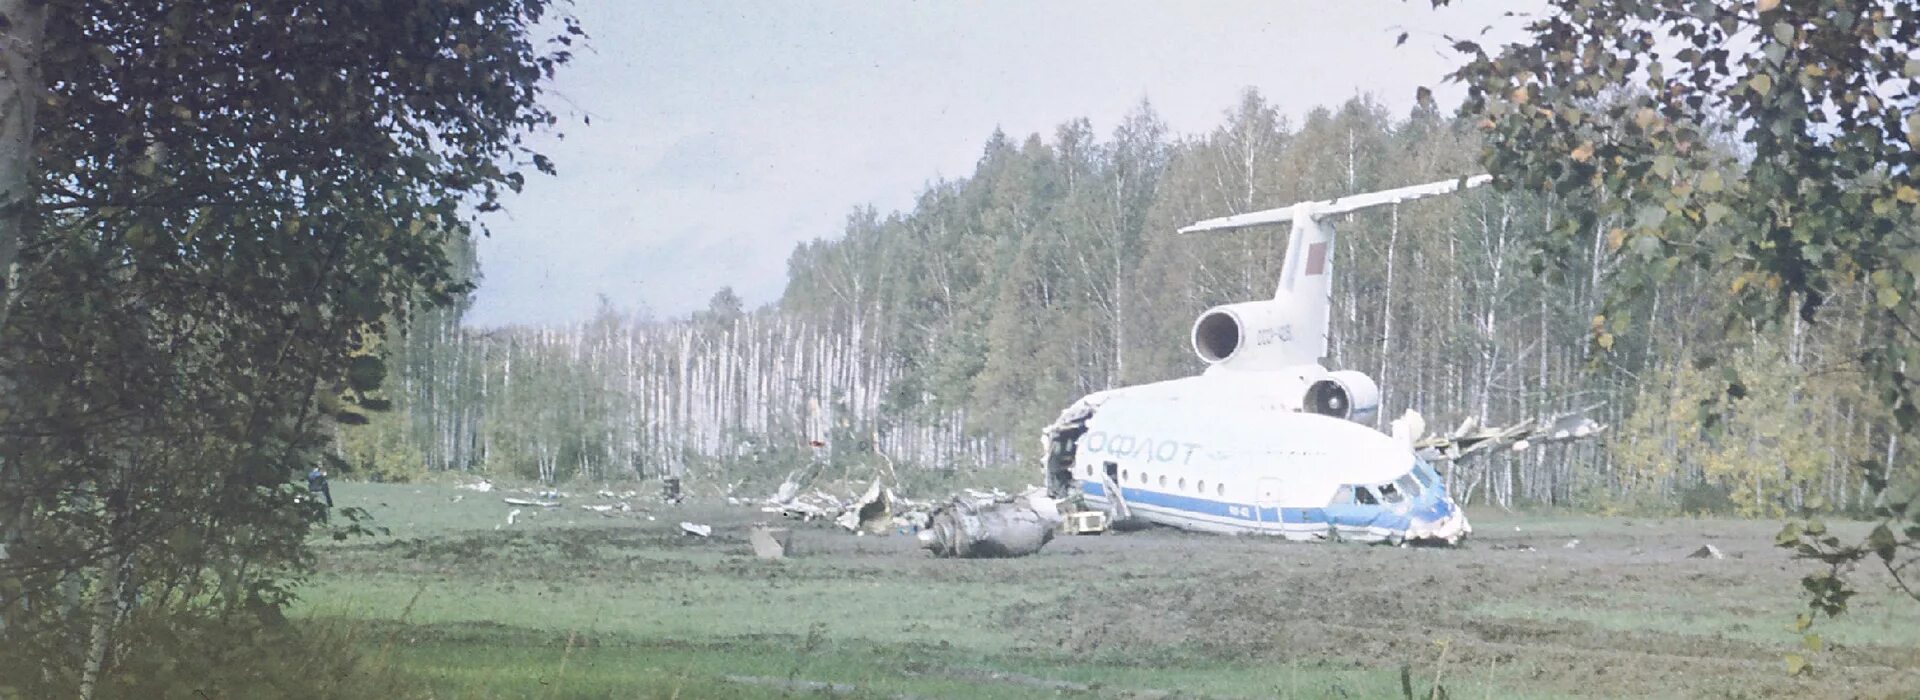 Катастрофа самолета в иваново. Крушение як 42 в Свердловске. Катастрофа самолёта як-42. 14 Сентября 1990 года самолет як-42. Катастрофа як-42 в Свердловске в 1990 году.